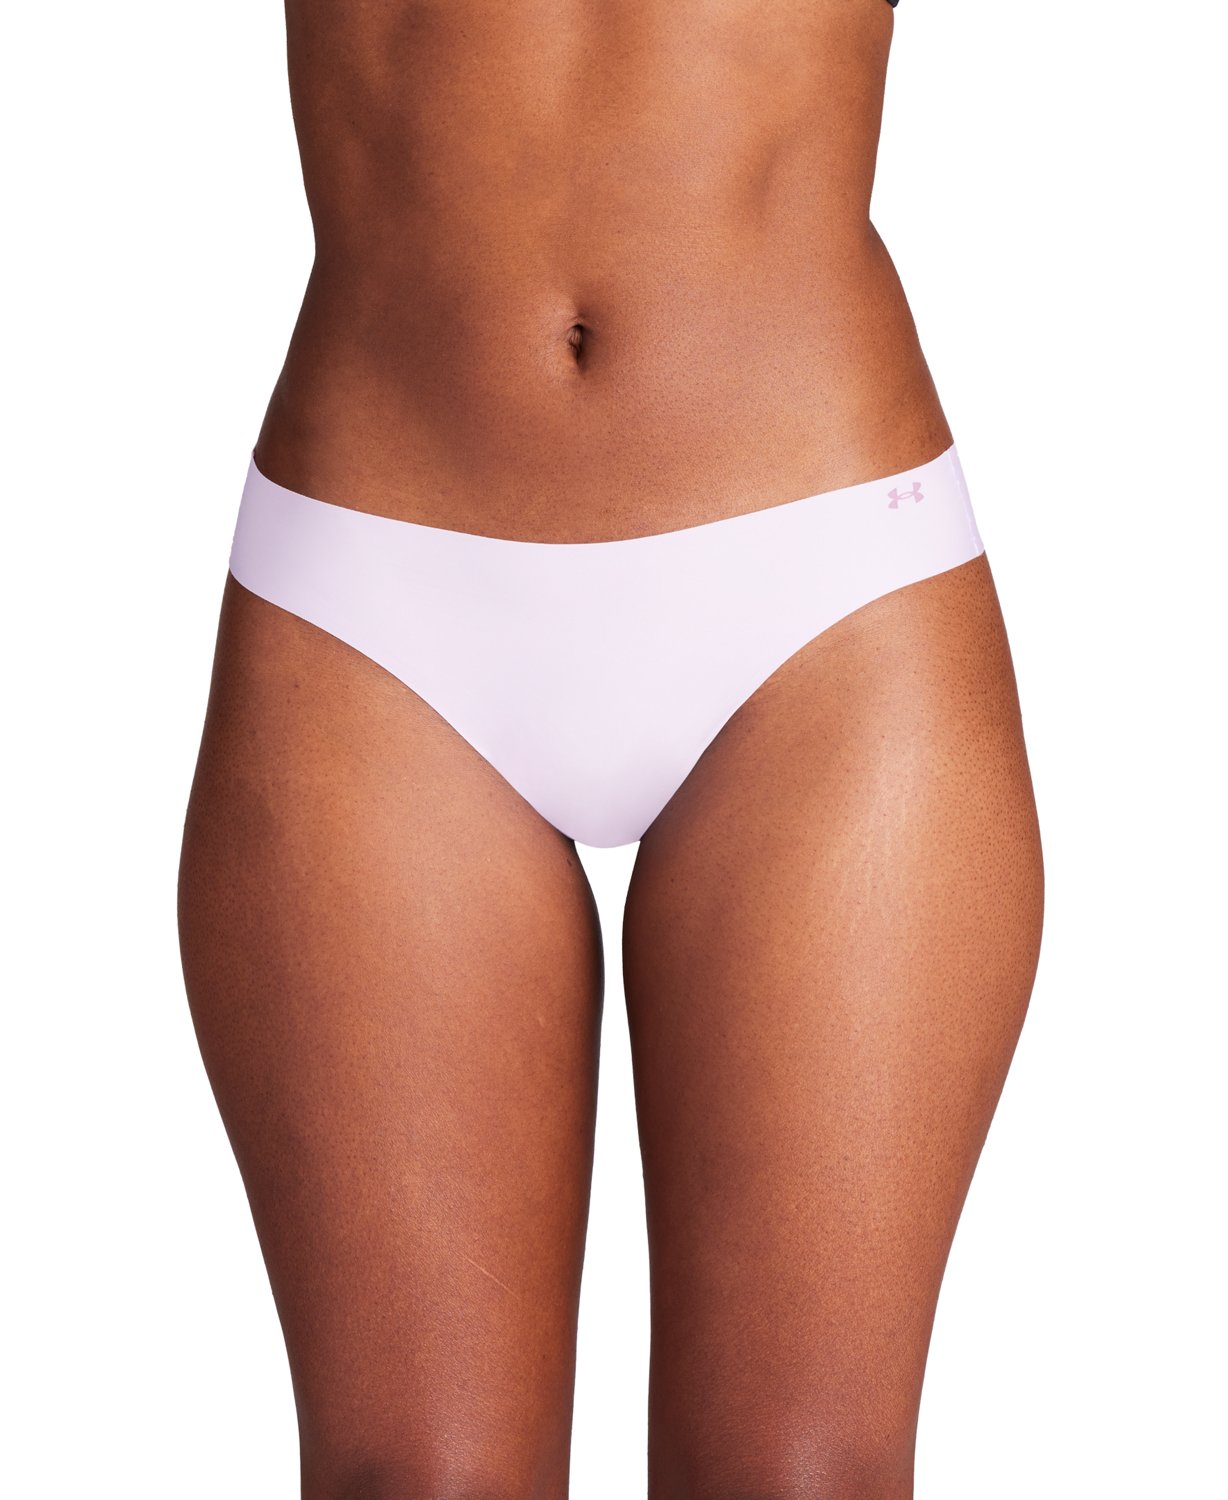 Buy Uw Underwear Women's Athleisure Size 12 online at